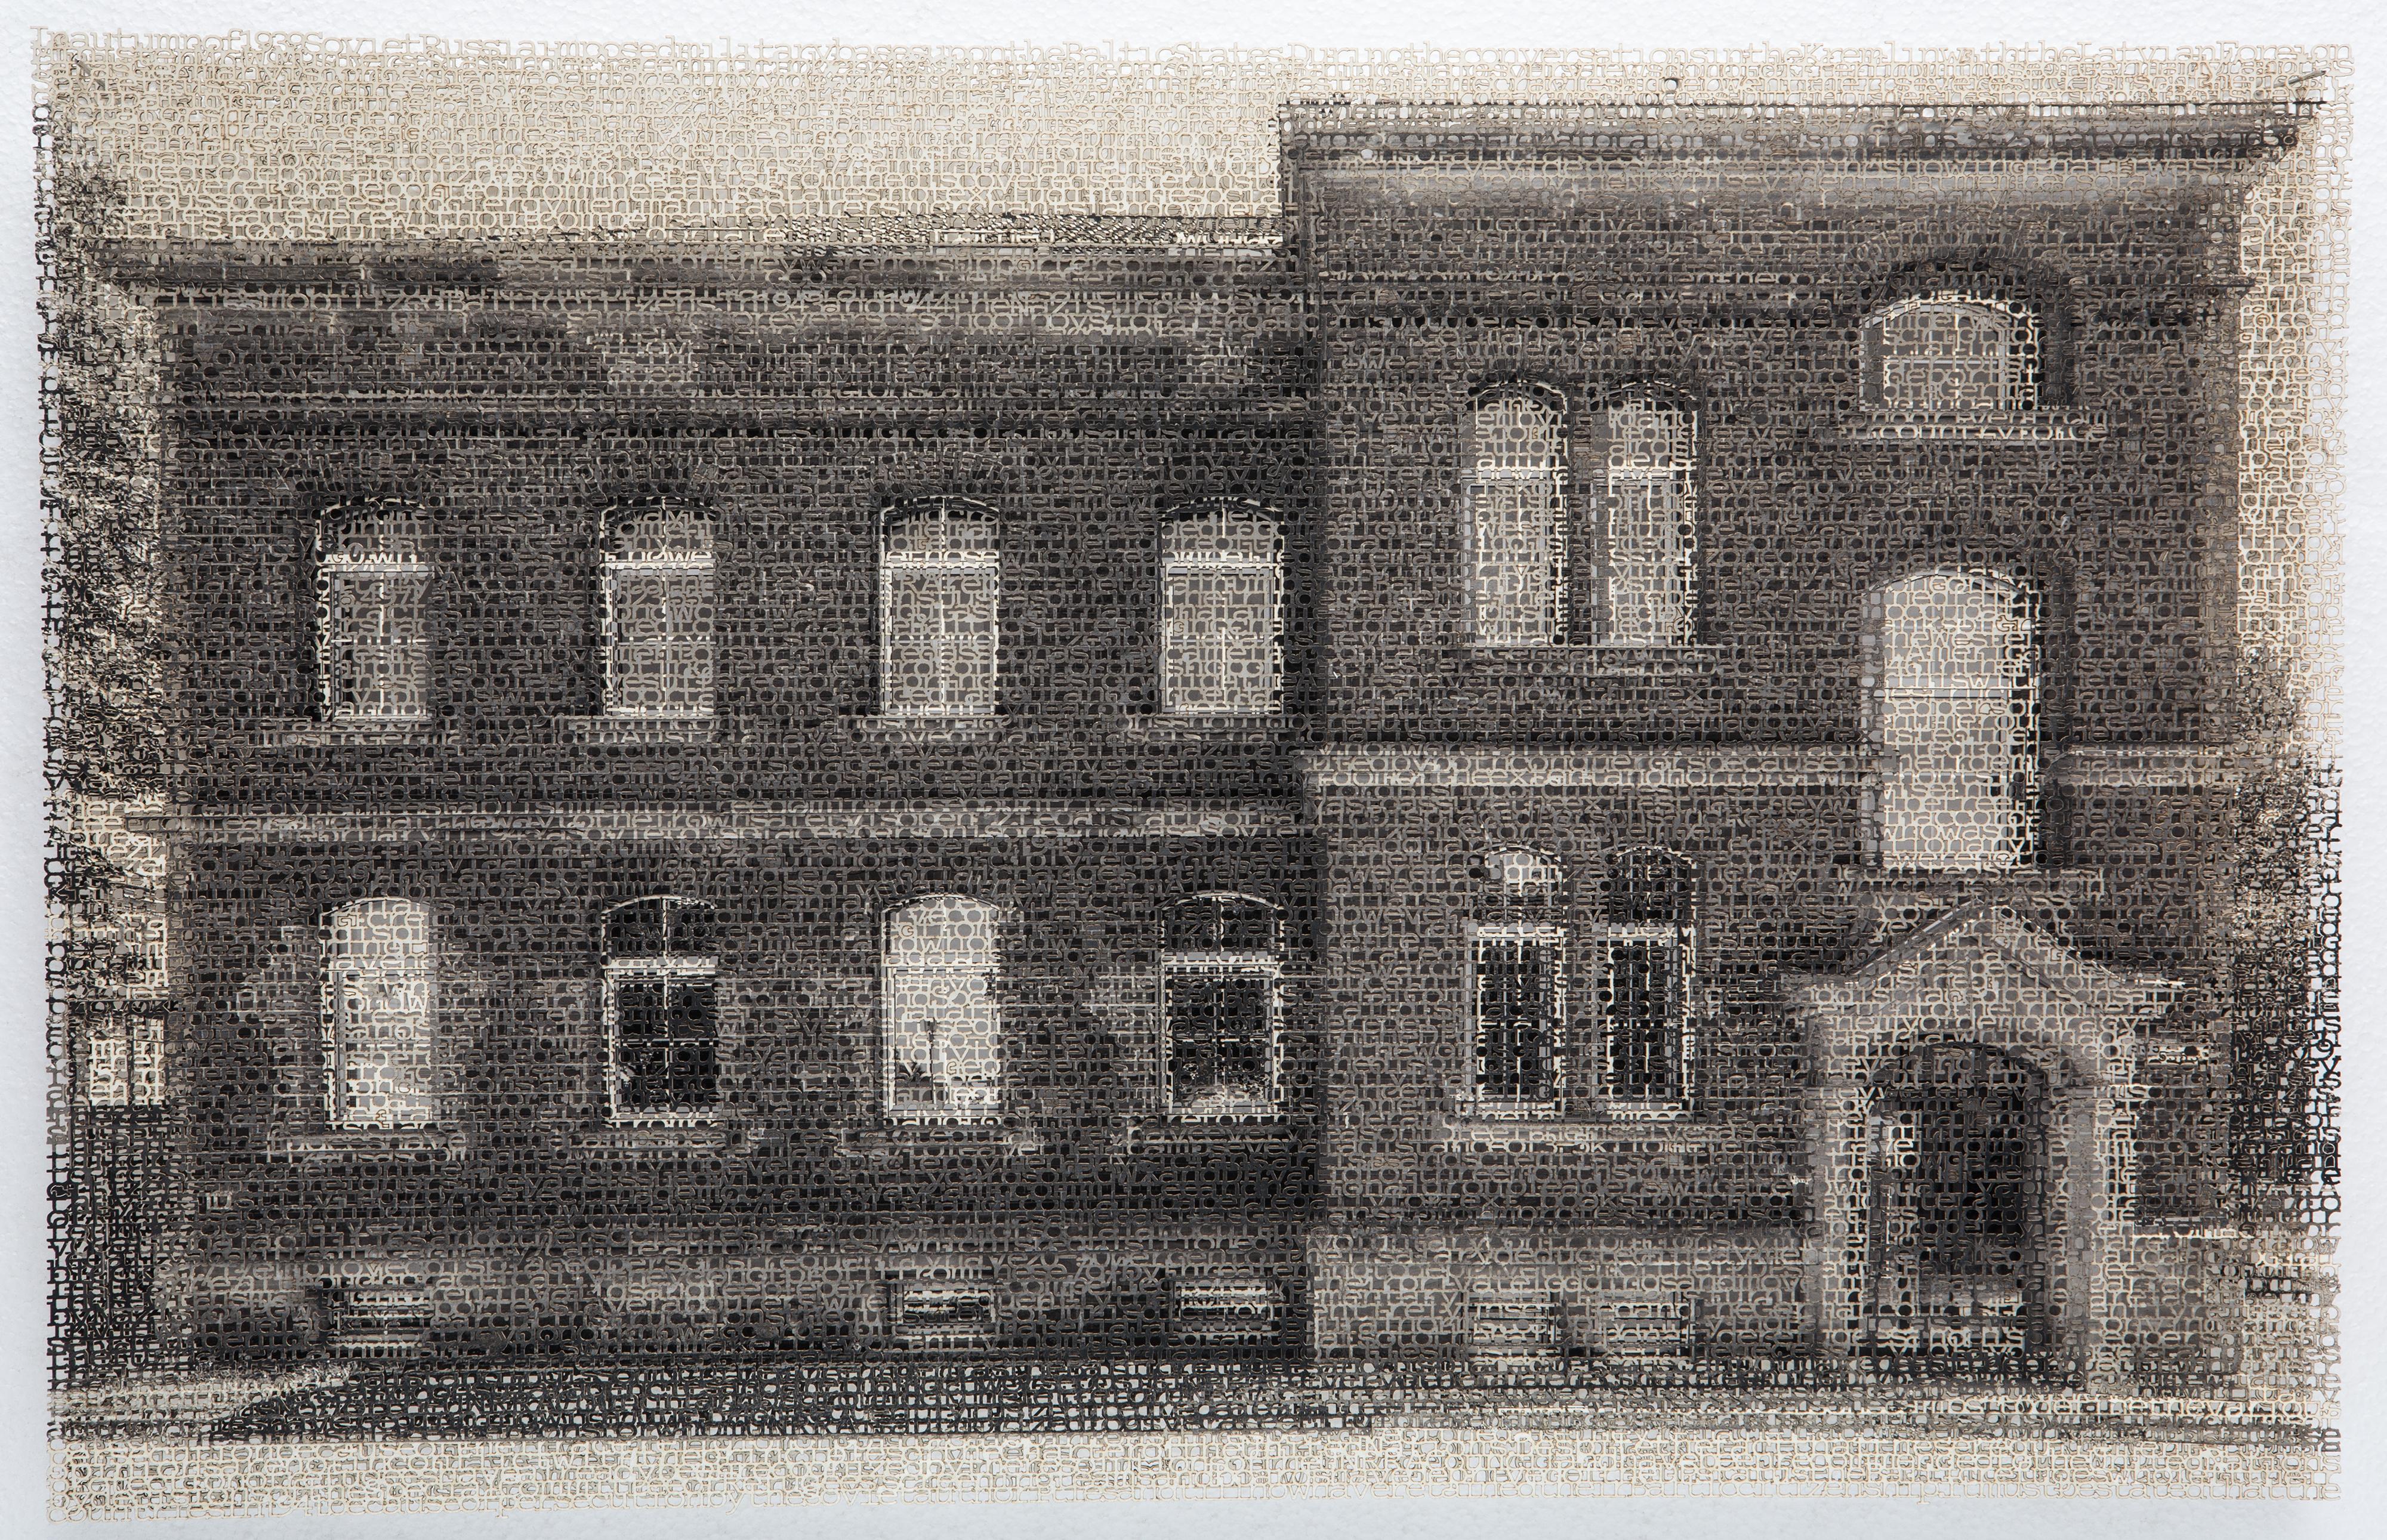 Krista Svalbonas Black and White Photograph – Ansbach 1, Laserschnitt Archivpigment-Tinte-Druck, signiert, nummeriert, gerahmt